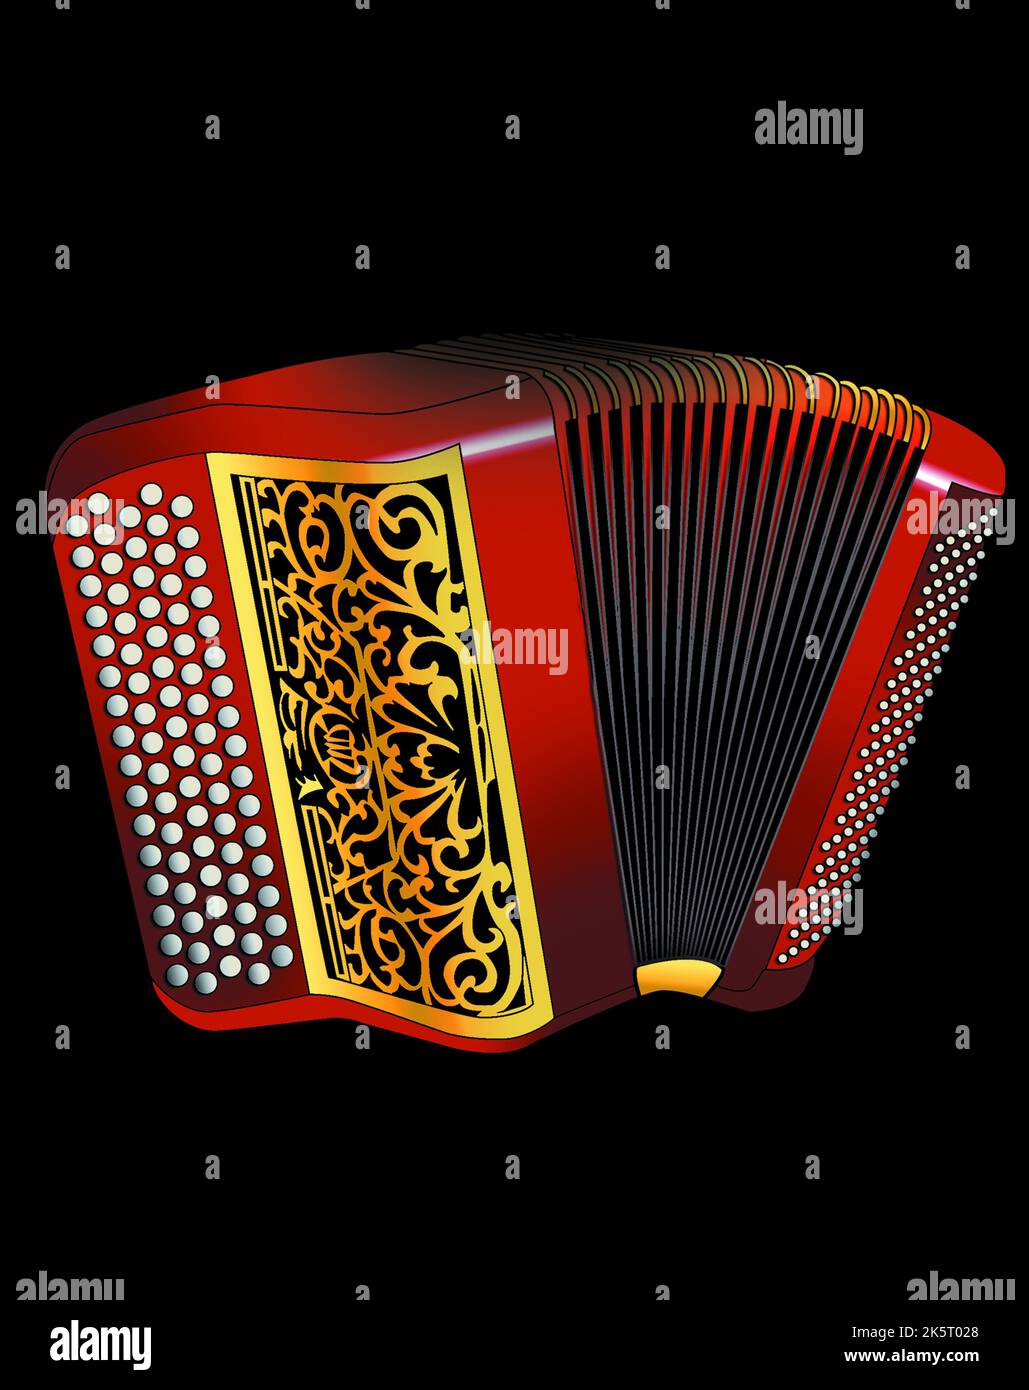 Un accordéon rouge et doré illustré Banque D'Images